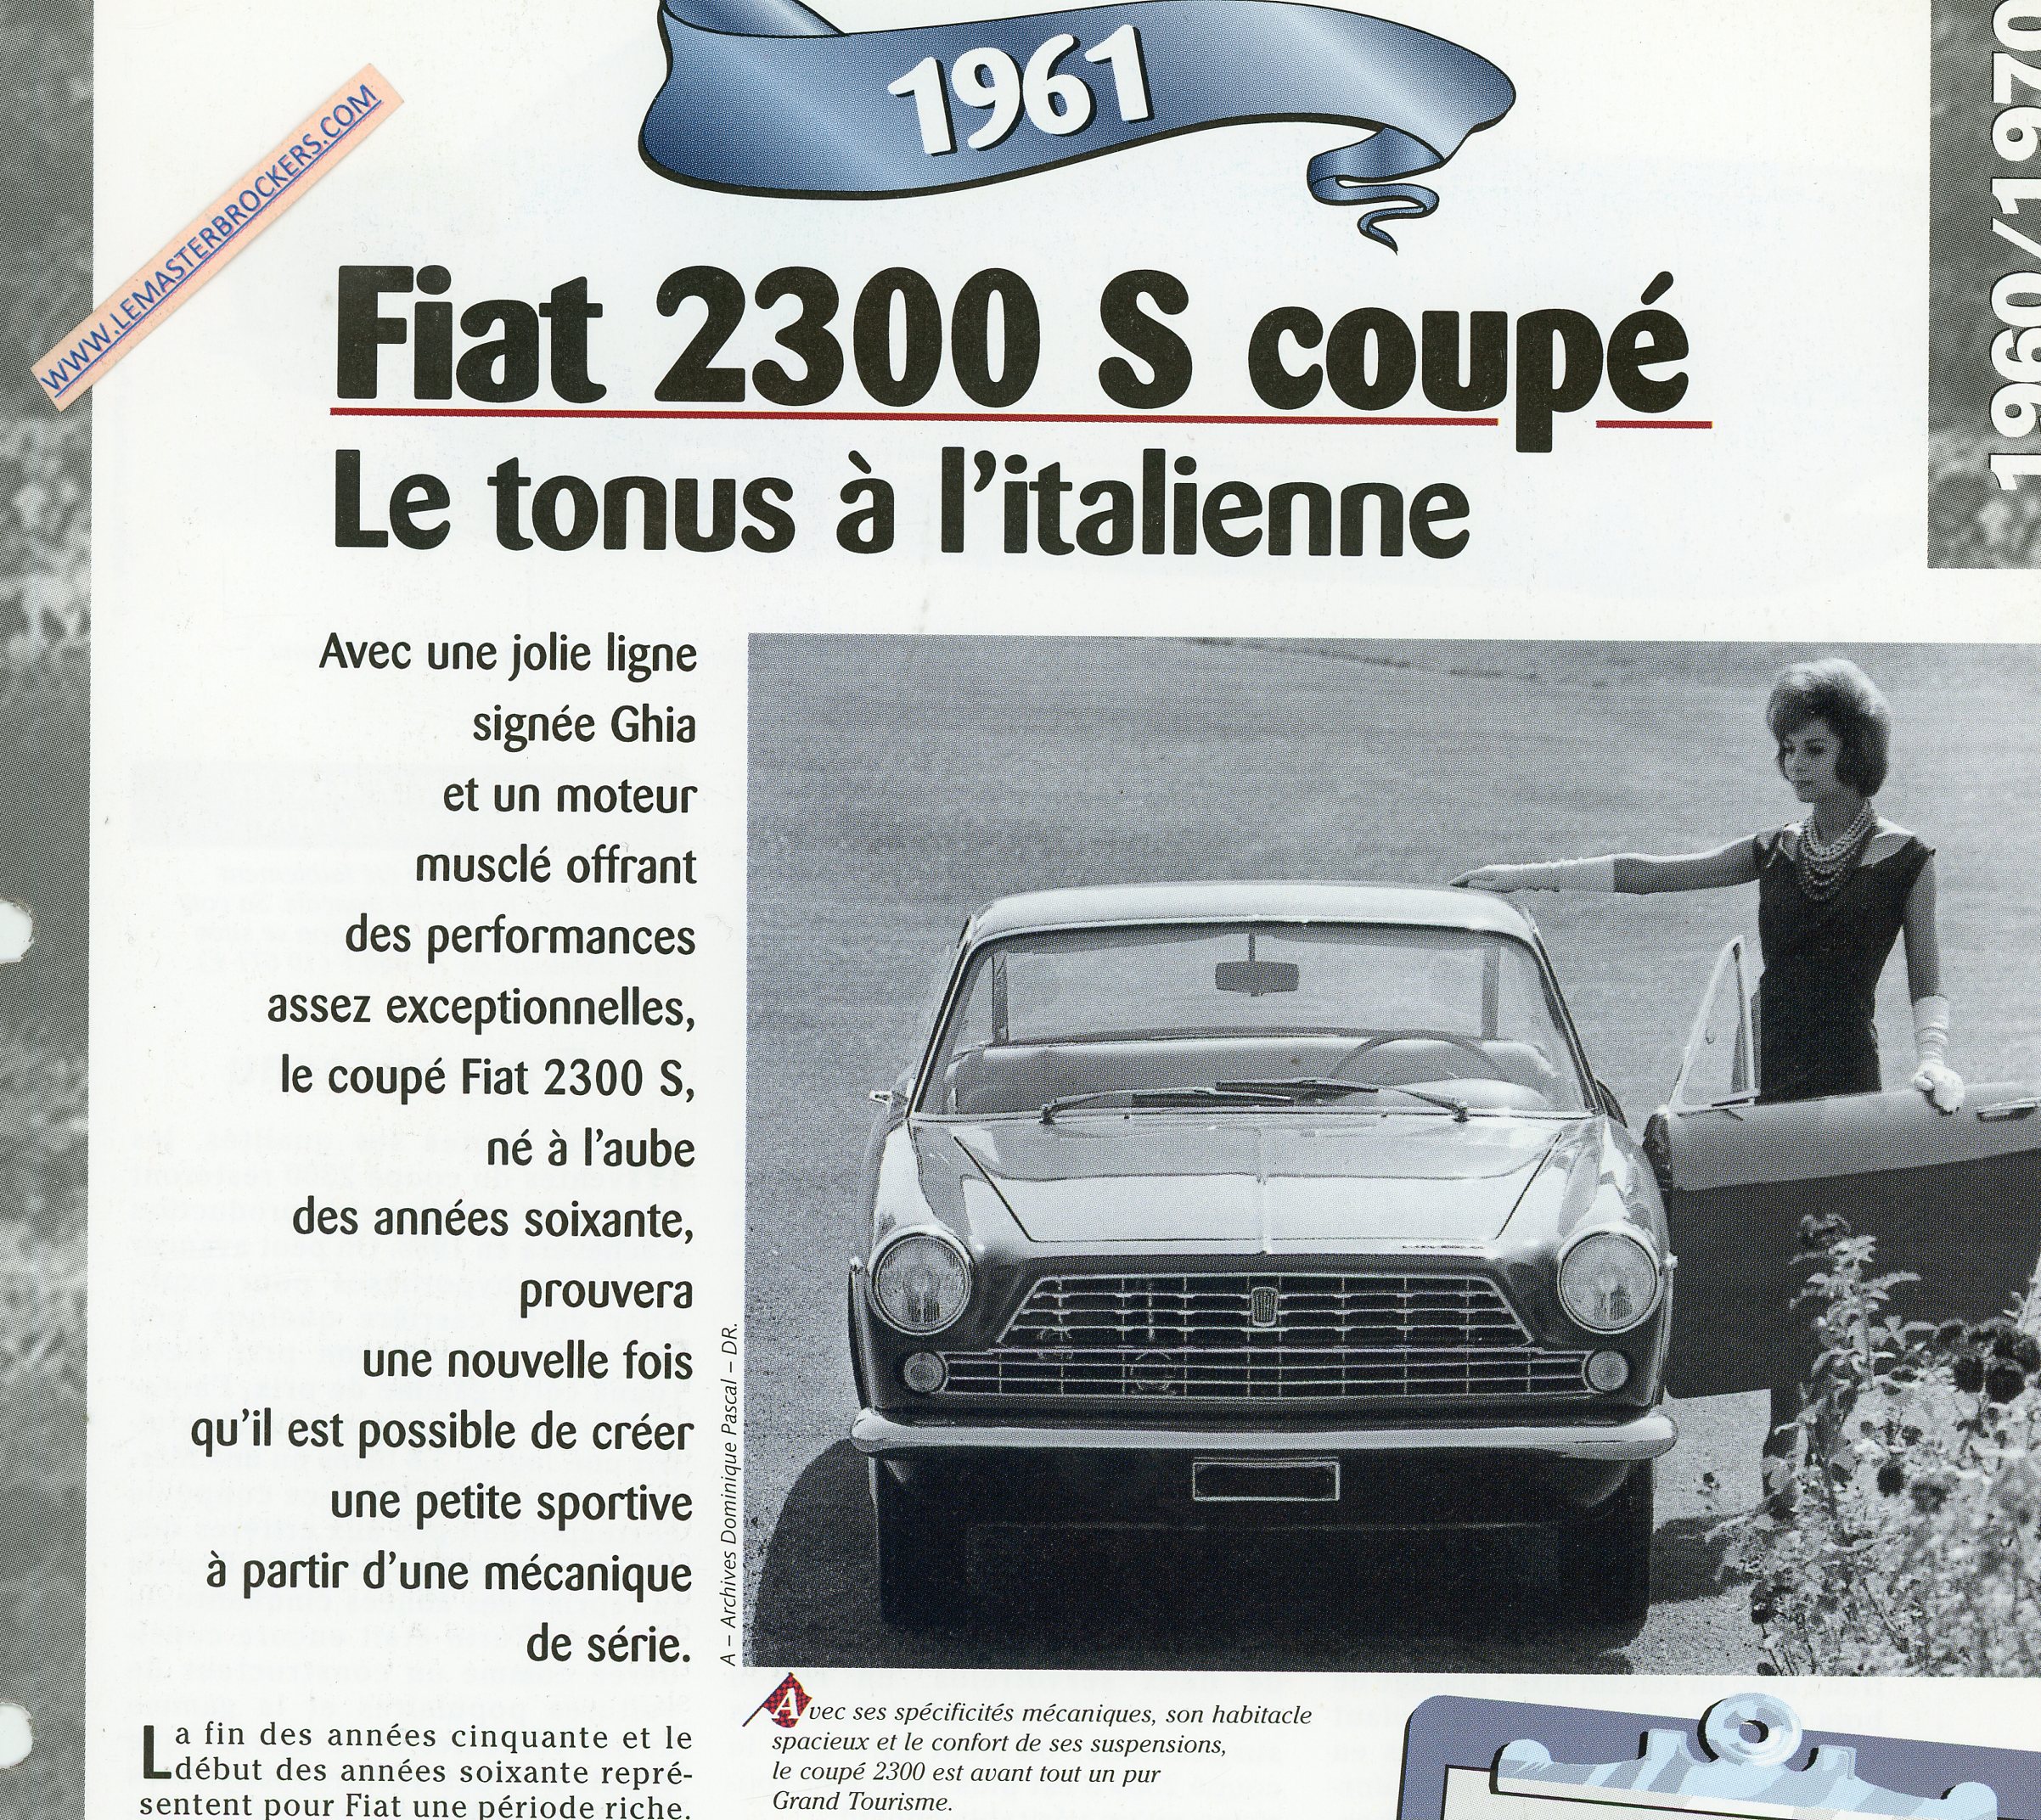 FIAT-2300-S-COUPE-FICHE-TECHNIQUE-LEMASTERBROCKERS-COM